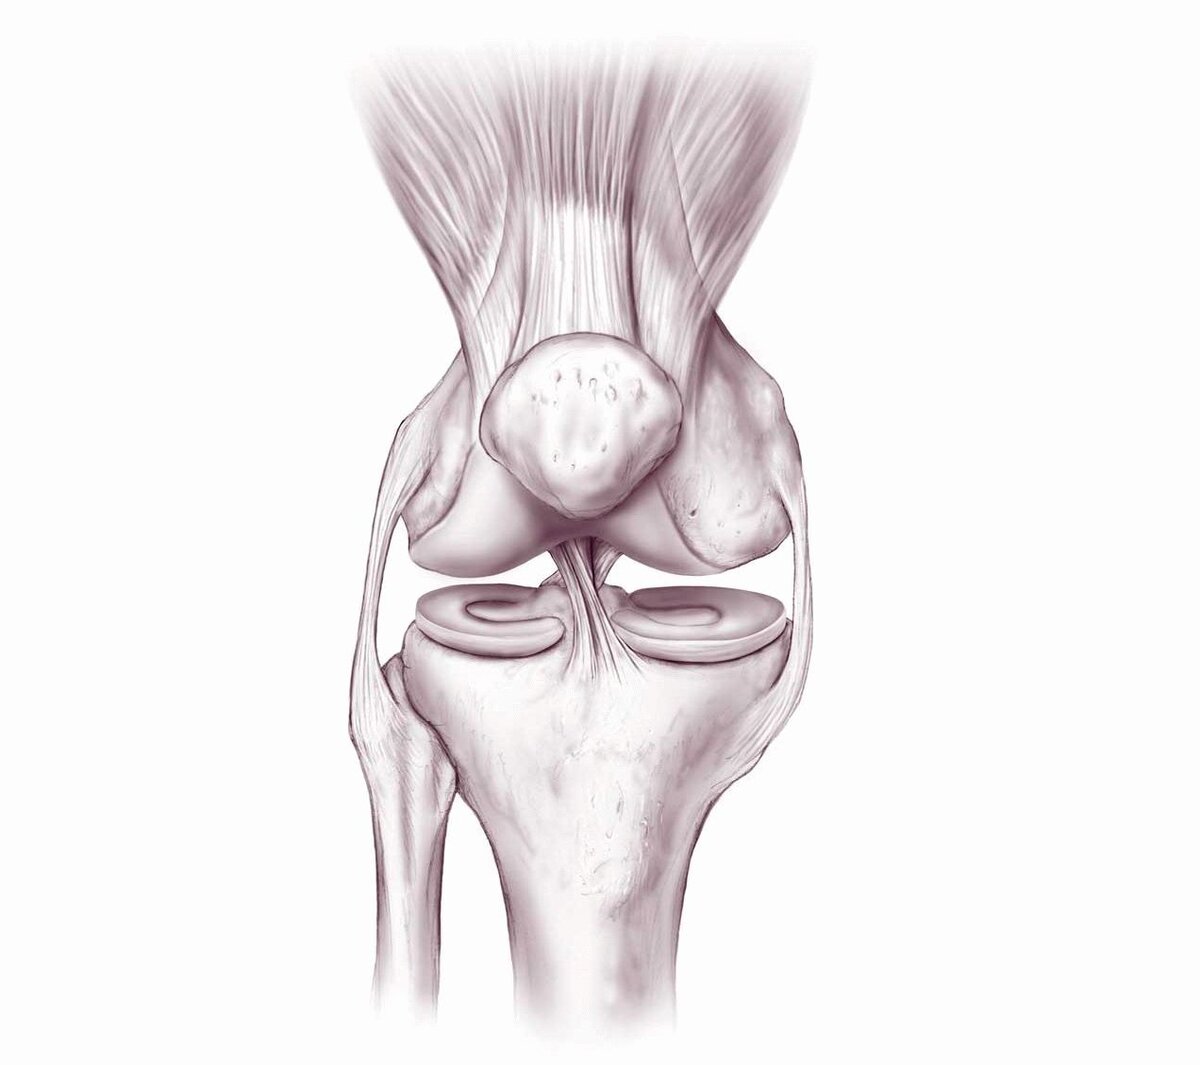 Как правильно приседать, чтобы не повредить коленный сустав. Приседания для лечения гипертонии.